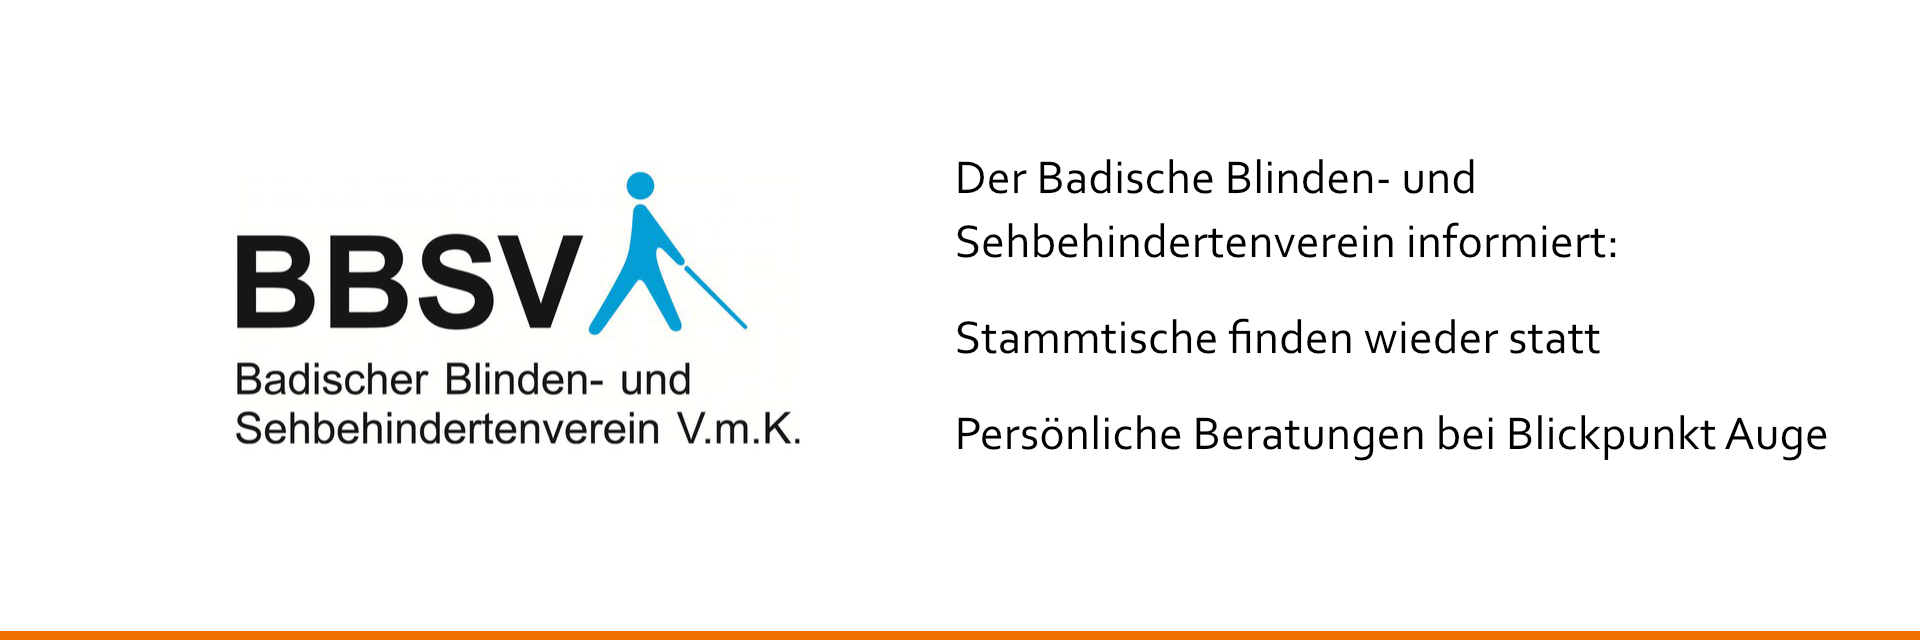 Logo Badischer Blinden- und Sehbehindertenverein. Text: Stammtische finden wieder statt. Persönliche Beratungen bei Blickpunkt Auge